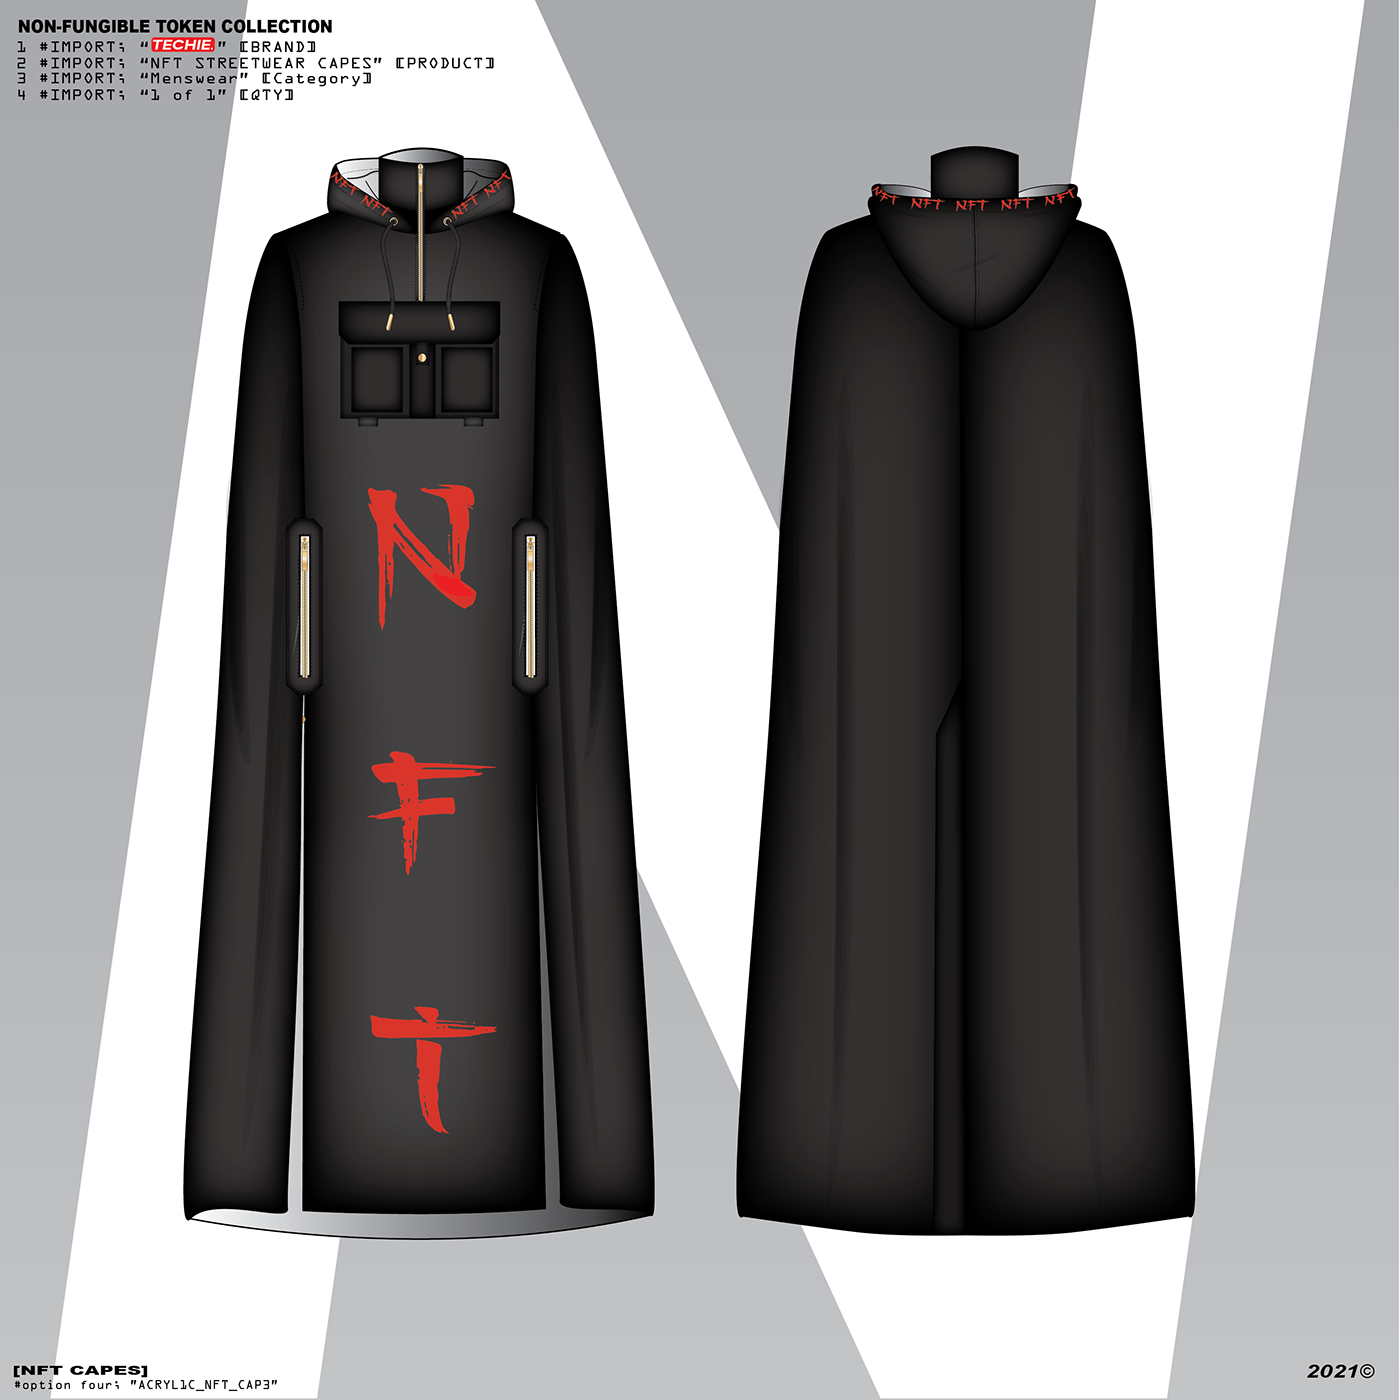 crypto cryptoart Fashion  fashion design Menswear nft nftartist NFTS streetwear Style